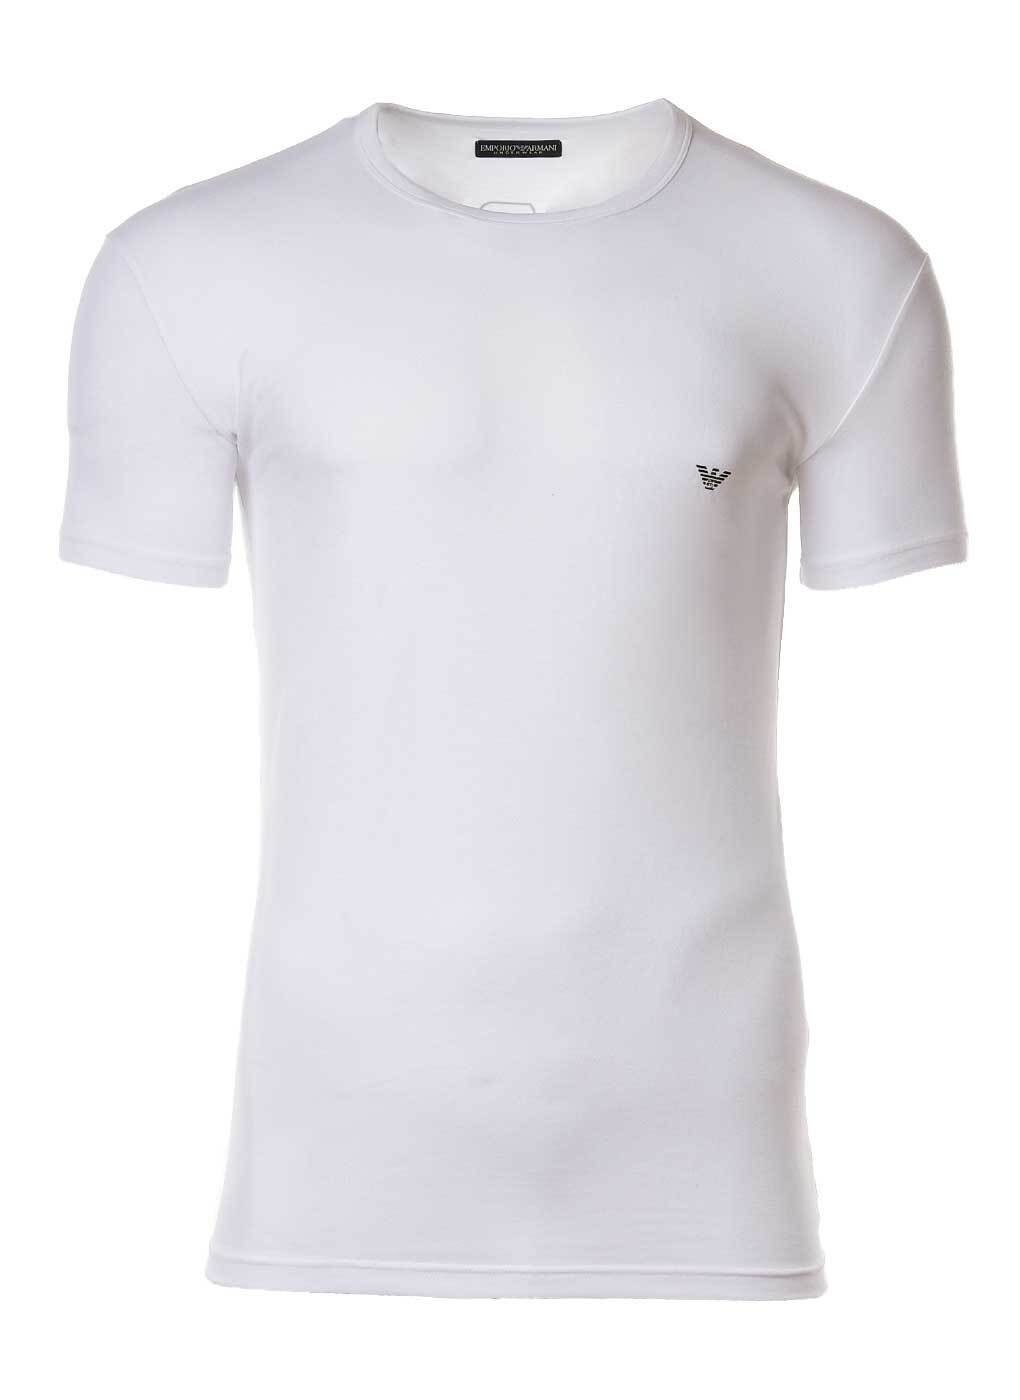 Emporio Armani T-Shirt Herren T-Shirt - Rundhals, Shirt, Halbarm, mit Weiß